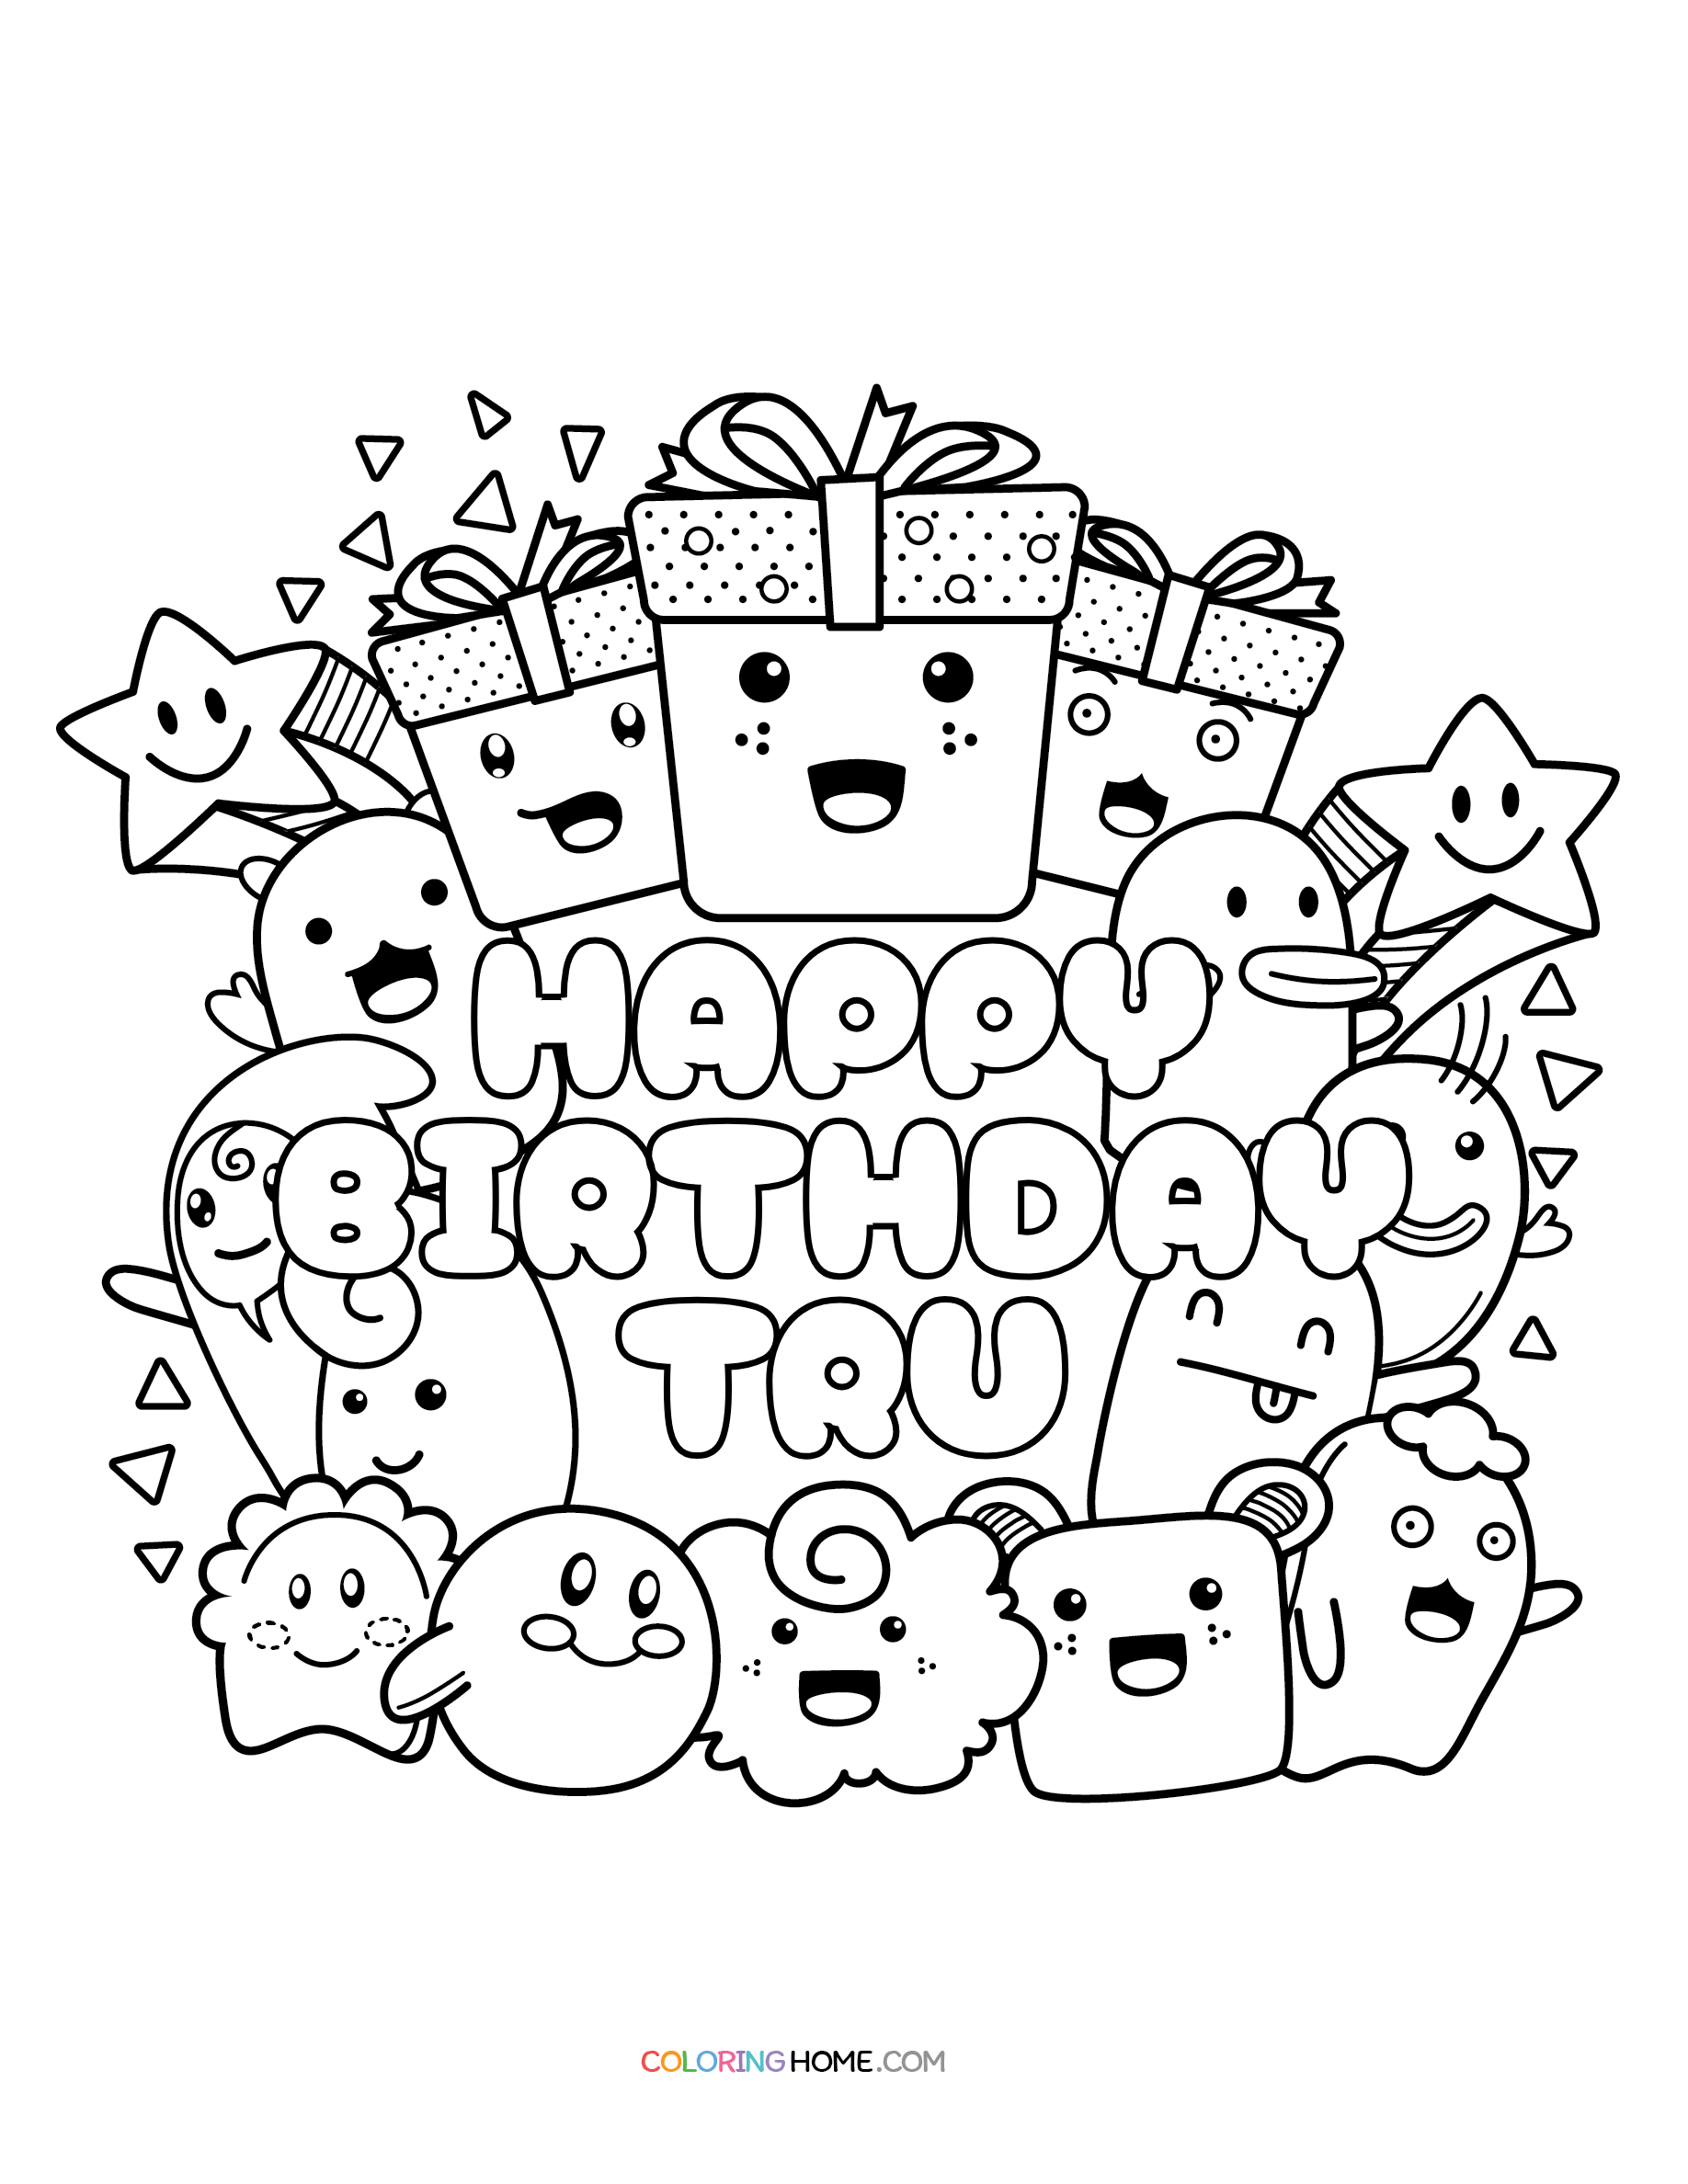 Happy Birthday Tru coloring page